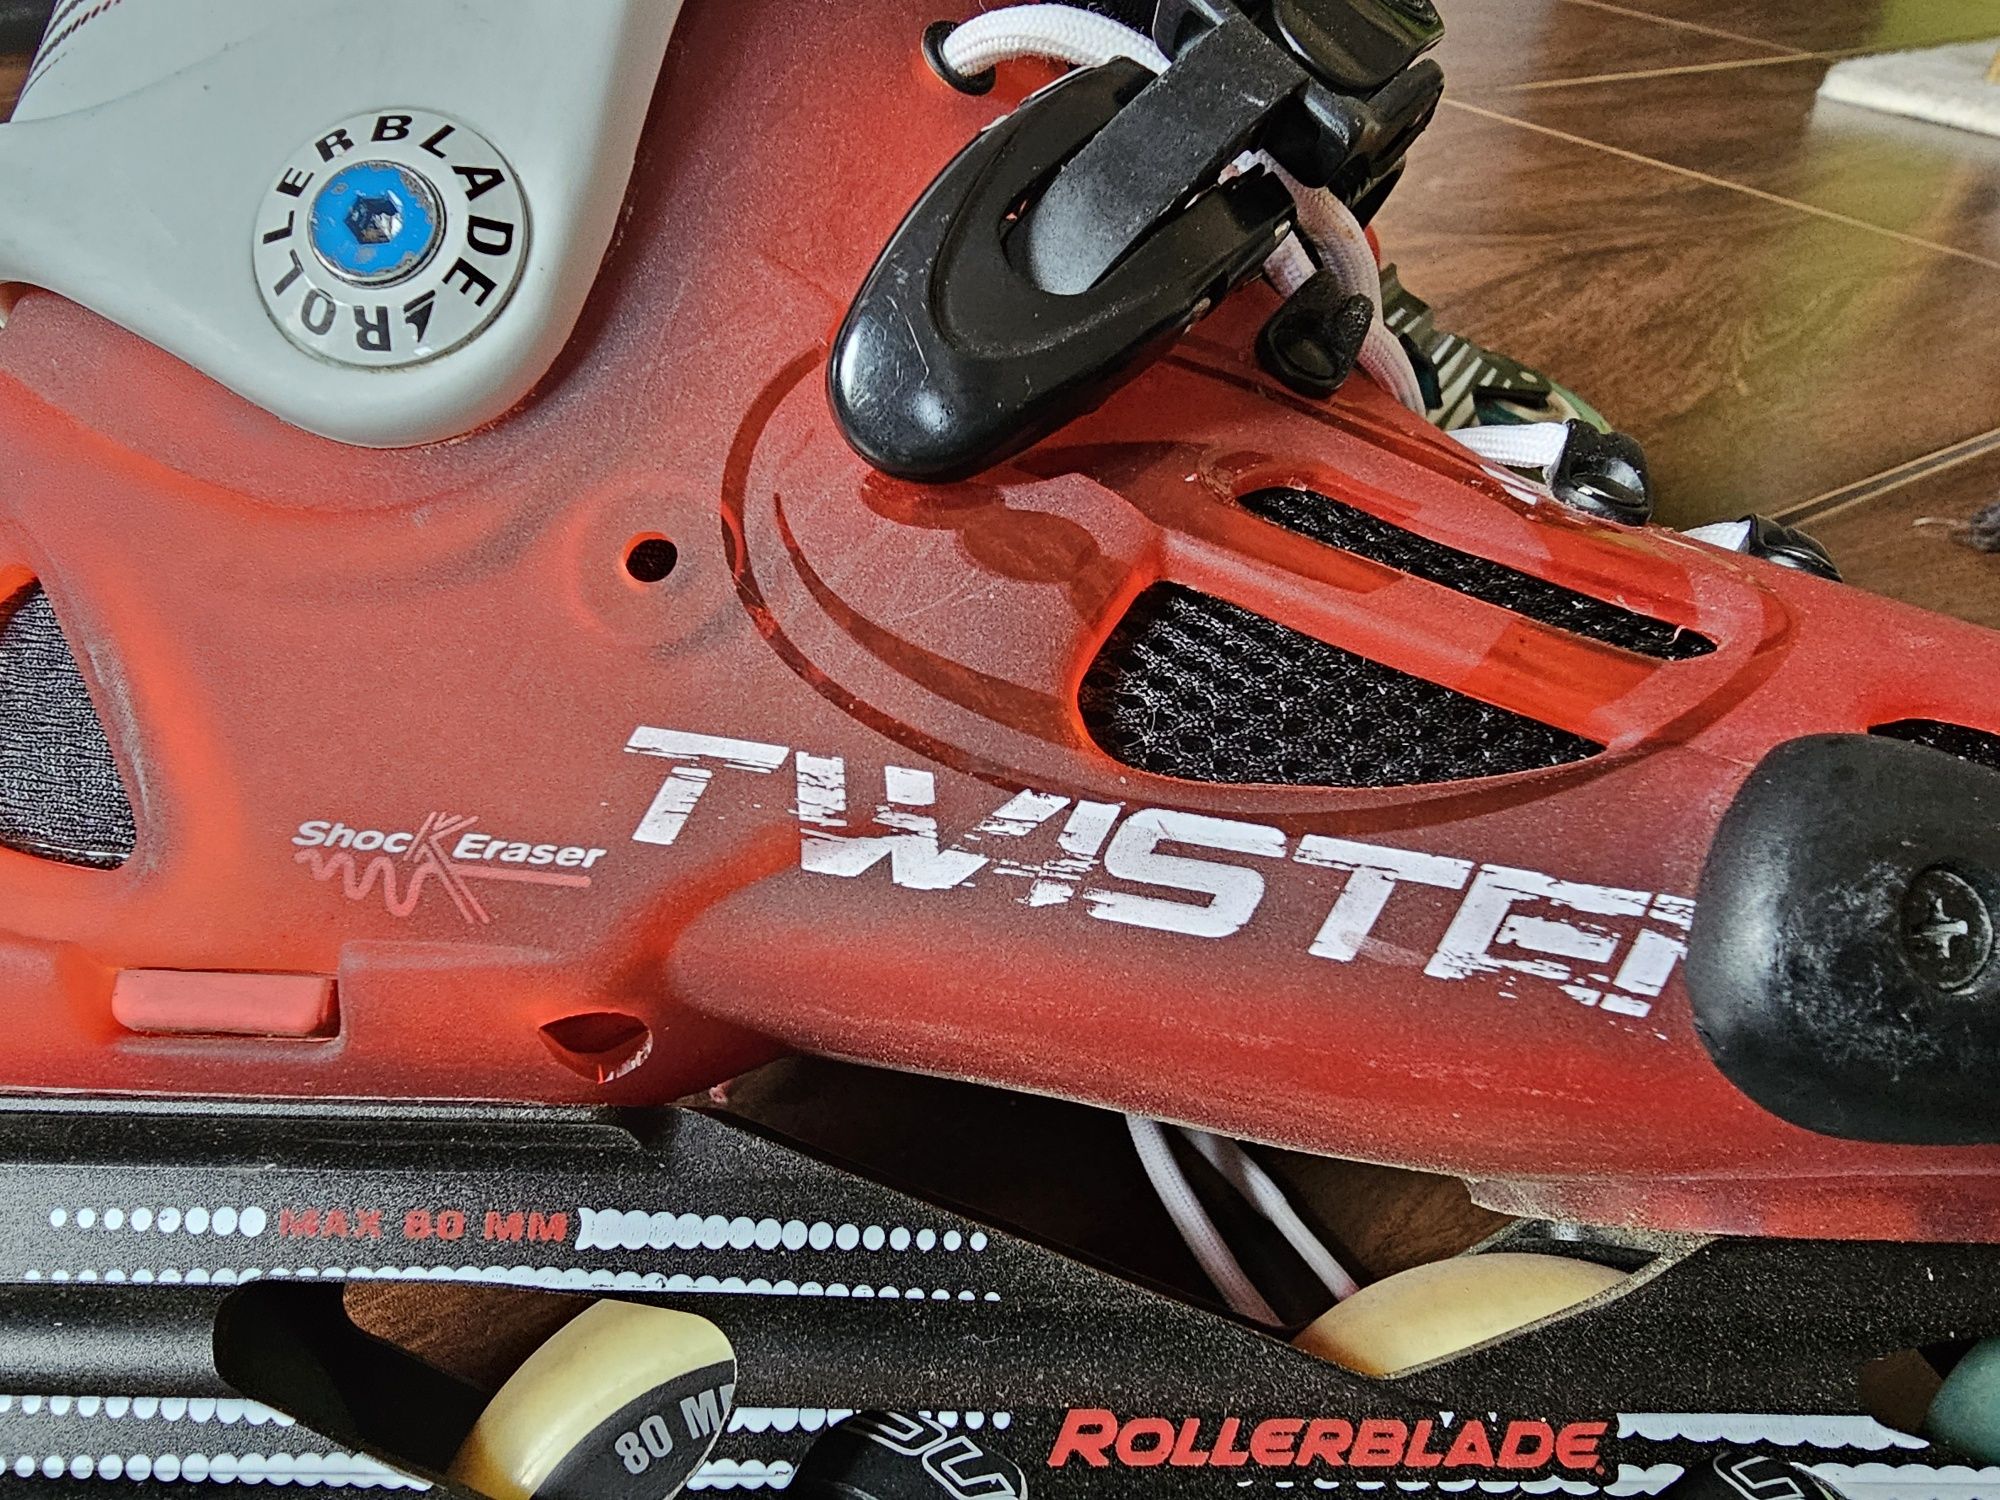 Rolki Rollerblade Twister Limited Czerwony, rozm. 43